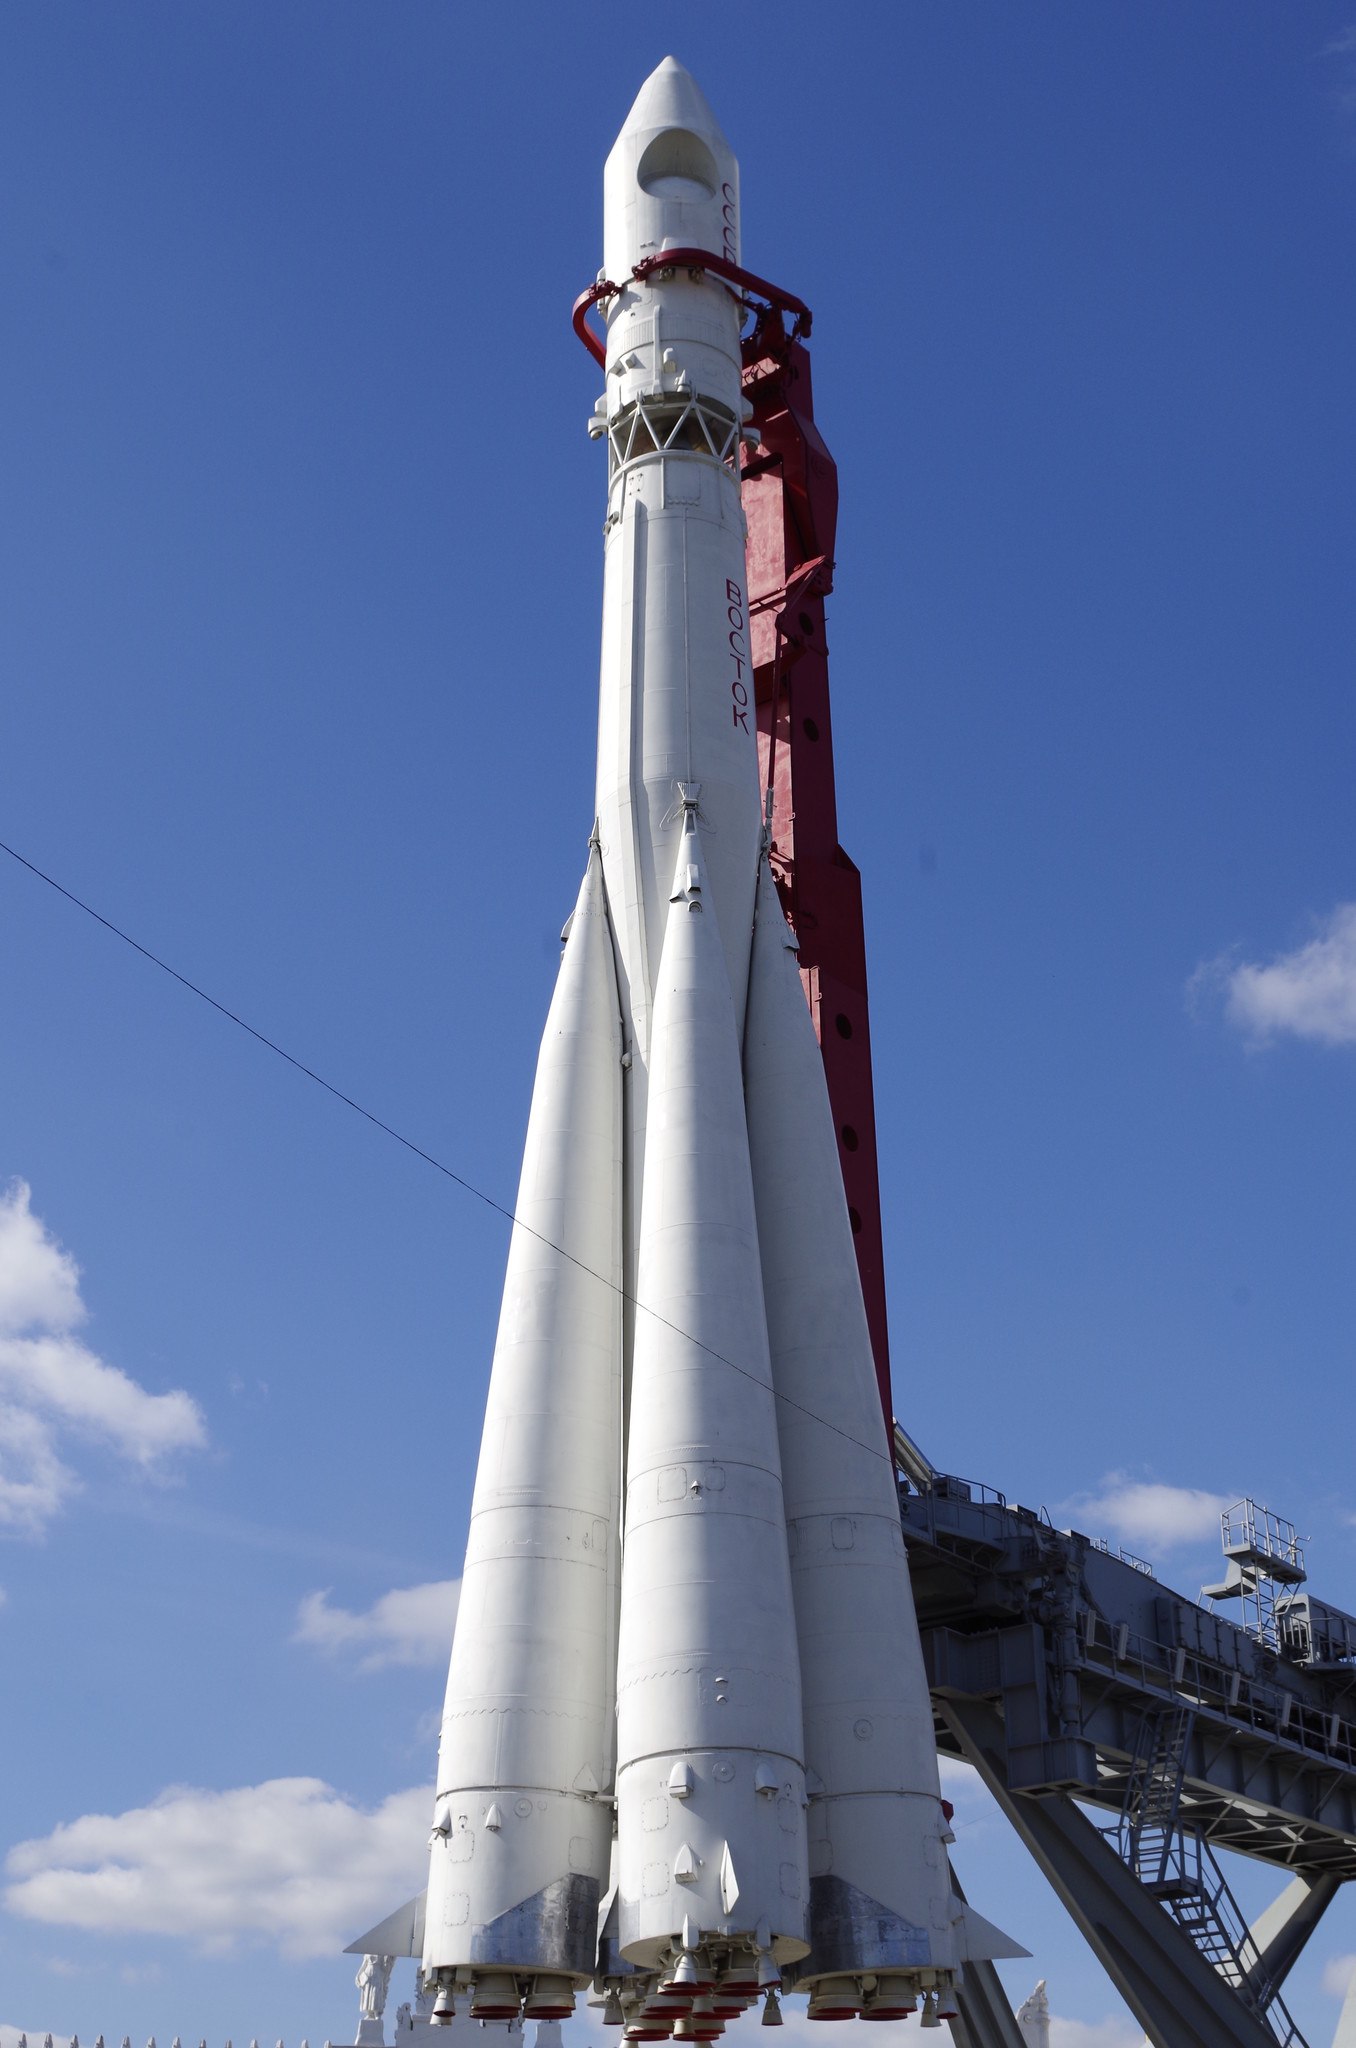 фото юрия гагарина с ракетой